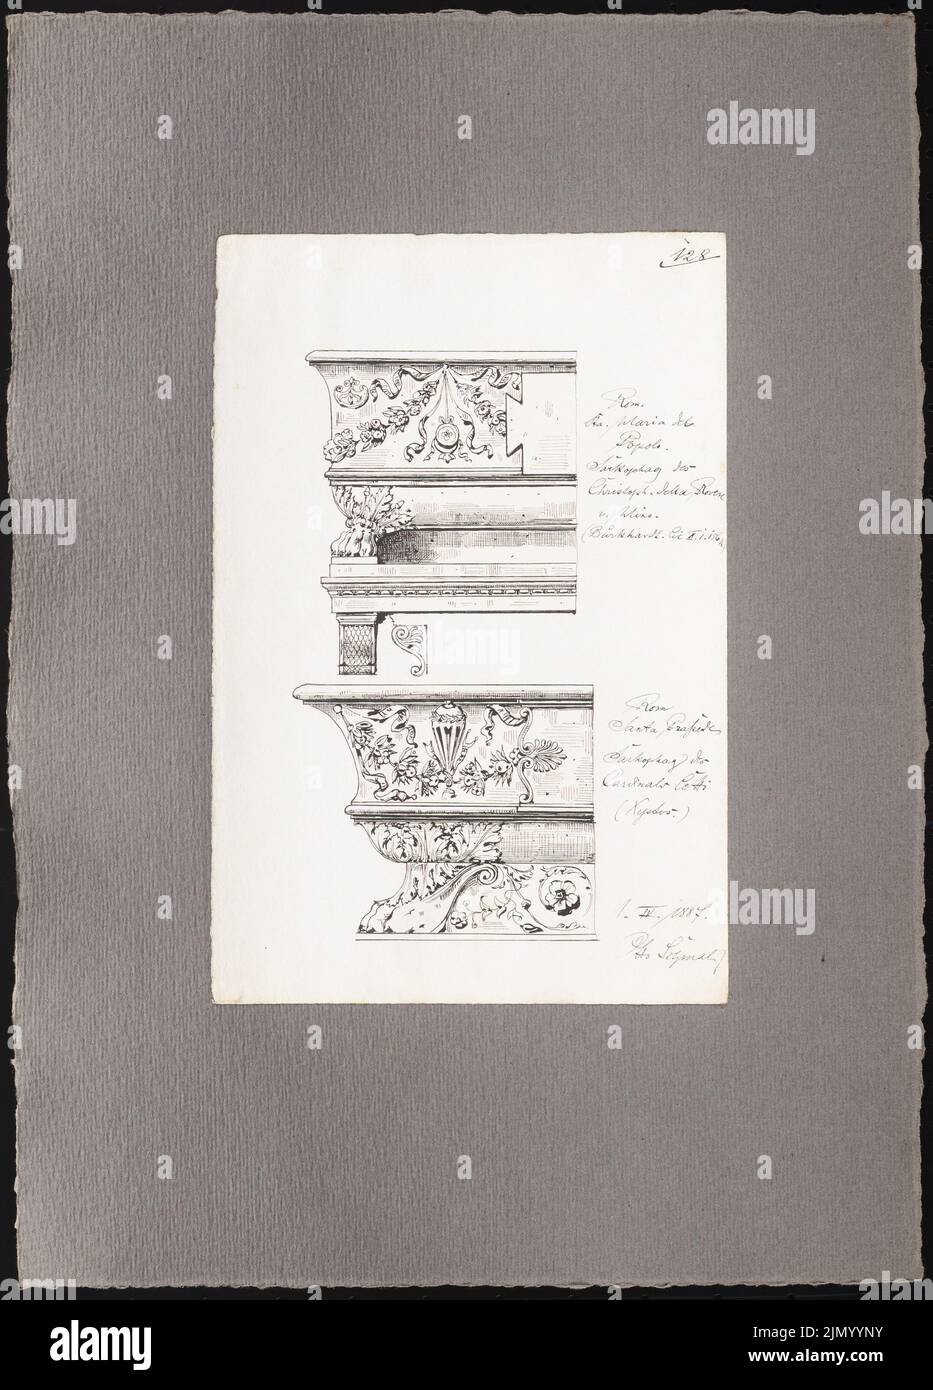 Schmalz Otto (1861-1915), bocetos de viaje de Pompeya, Nápoles y Roma (01.04.1887): Roma: Sarcófagos en la S. Maria del Popolo (vistas). Tinta sobre papel, 42,9 x 30,8 cm (incluidos los bordes de escaneo) Foto de stock